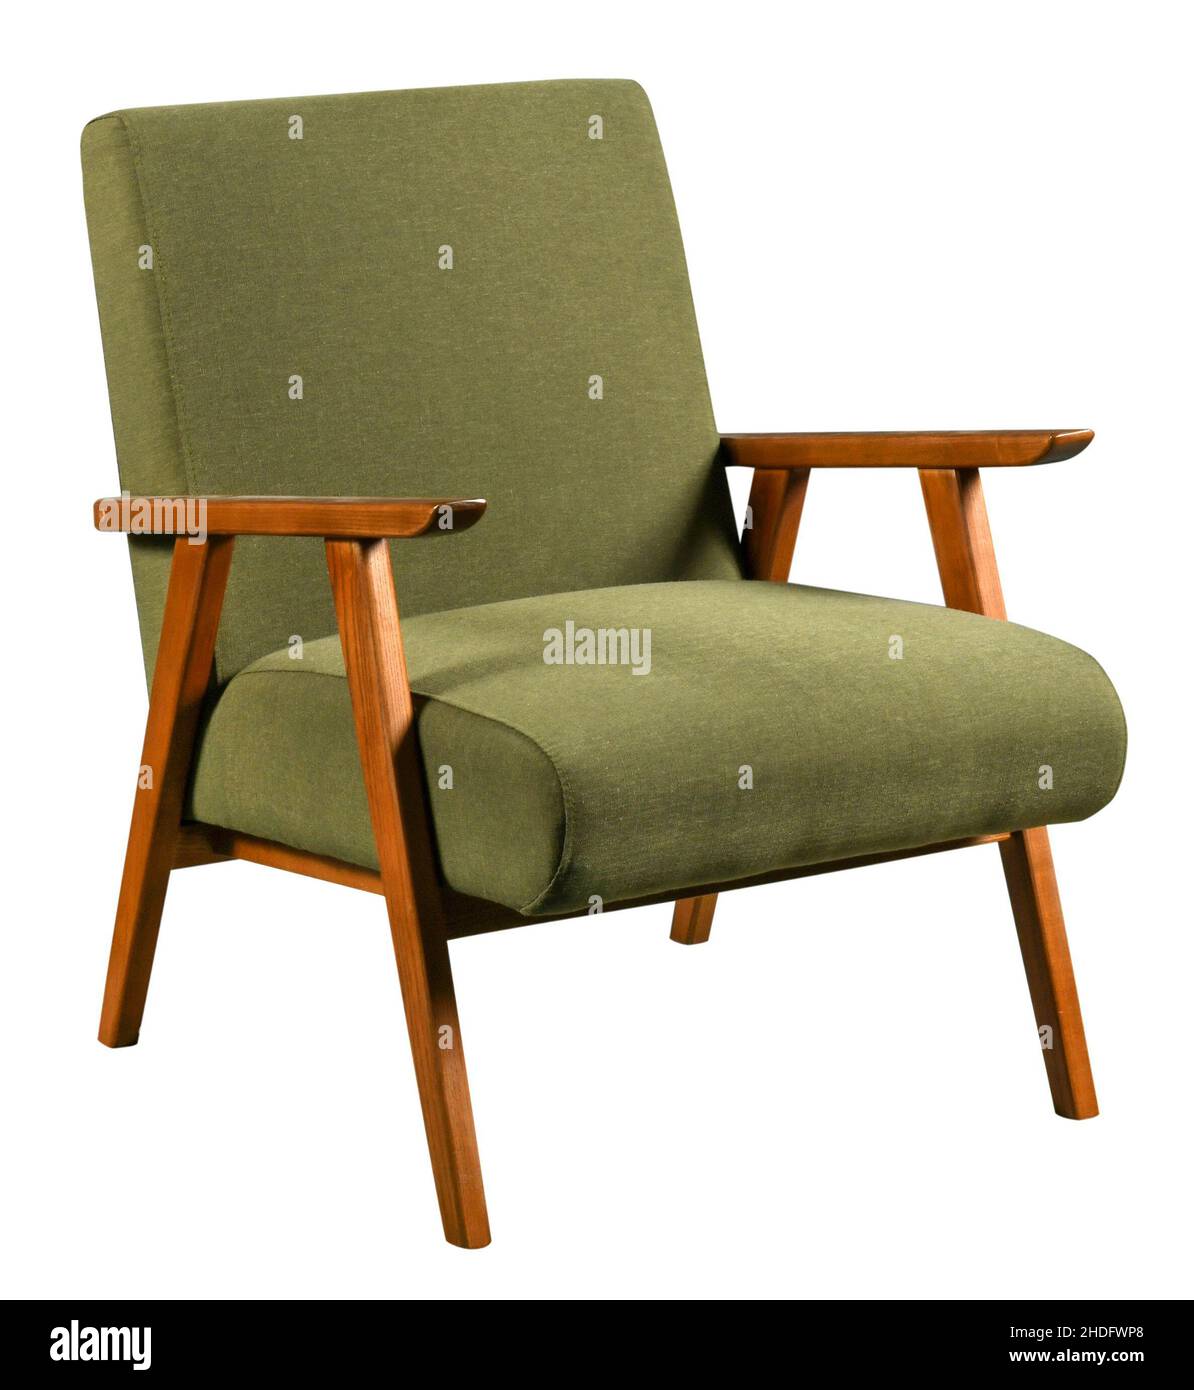 fauteuil, 70s, chaises, design de mobilier, fauteuils,1970s, années soixante-dix, chaise, mobilier design Banque D'Images